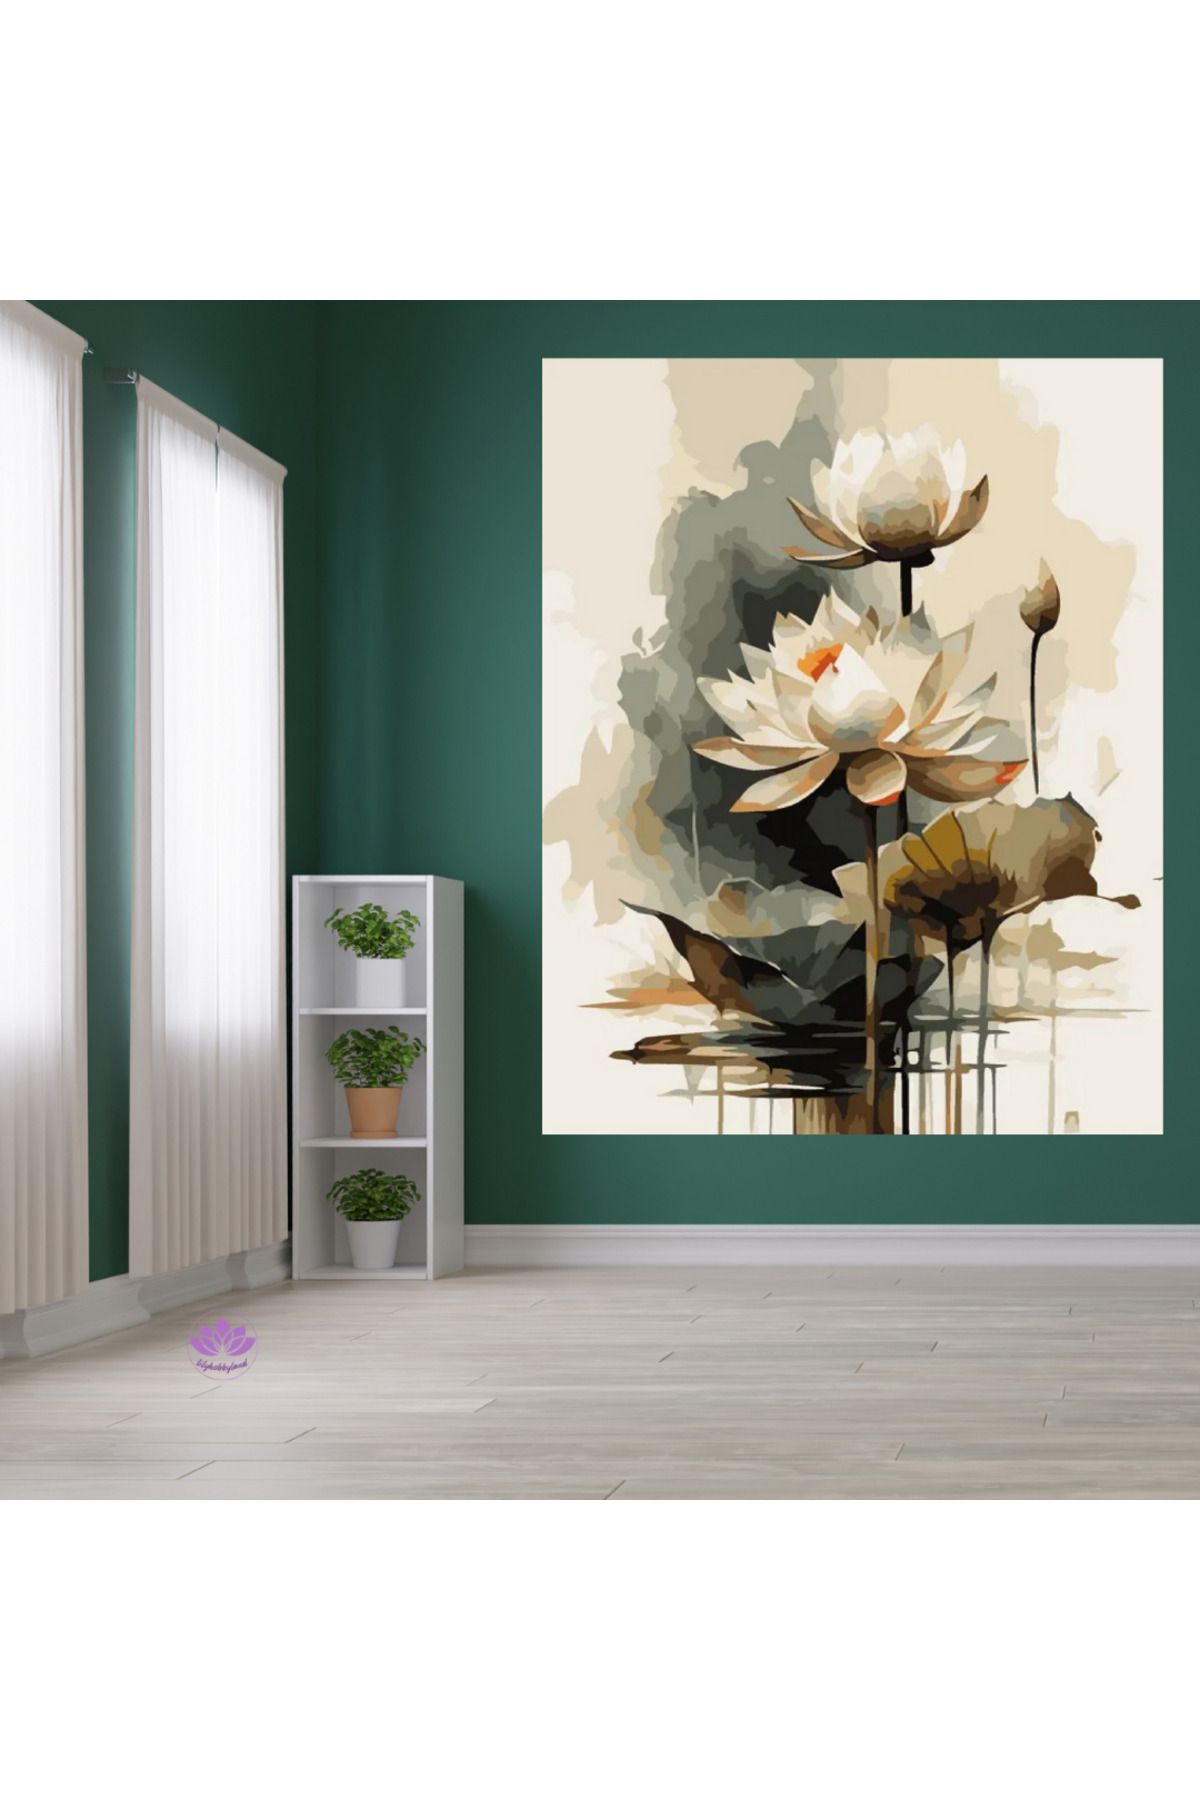 LİLYHOBBYLAND Renkli Baskılı Sayılarla Boyama Hobi Seti (Çerçeveli) 60x75 cm:  Lotus Çiçeği